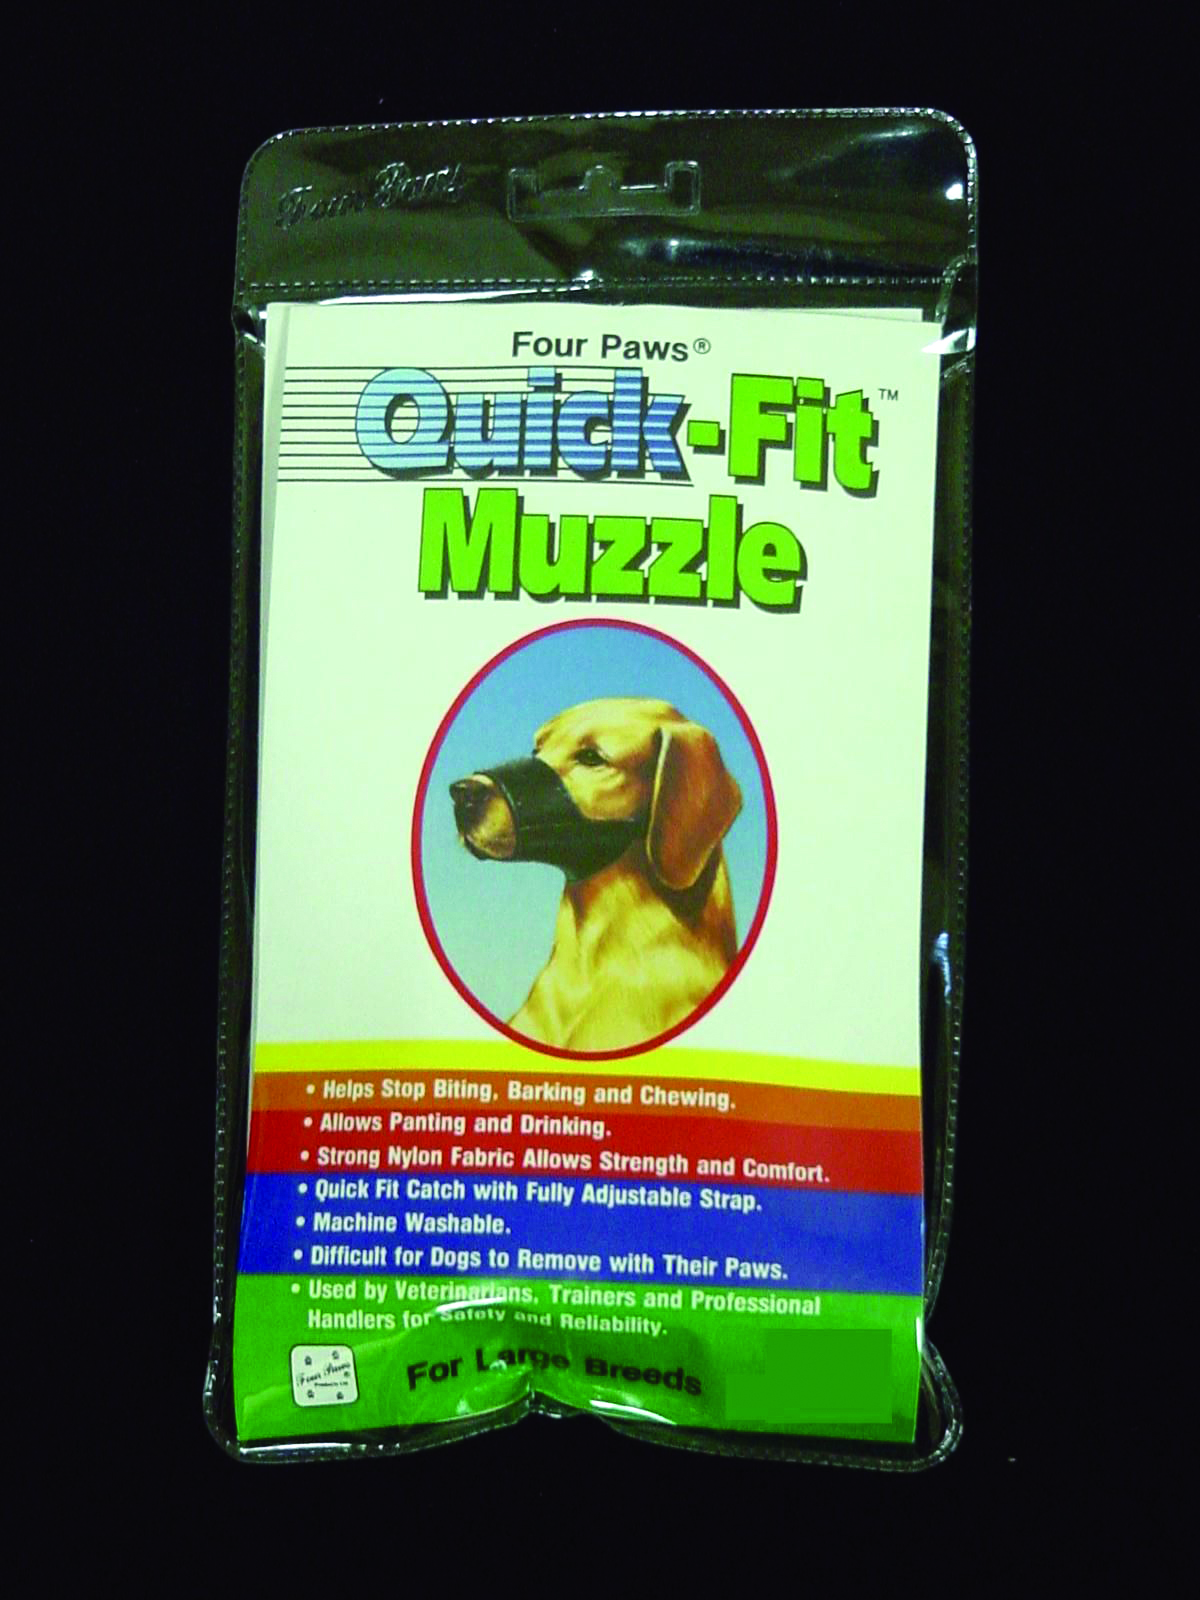 Quick Fit Muzzle - Size 4